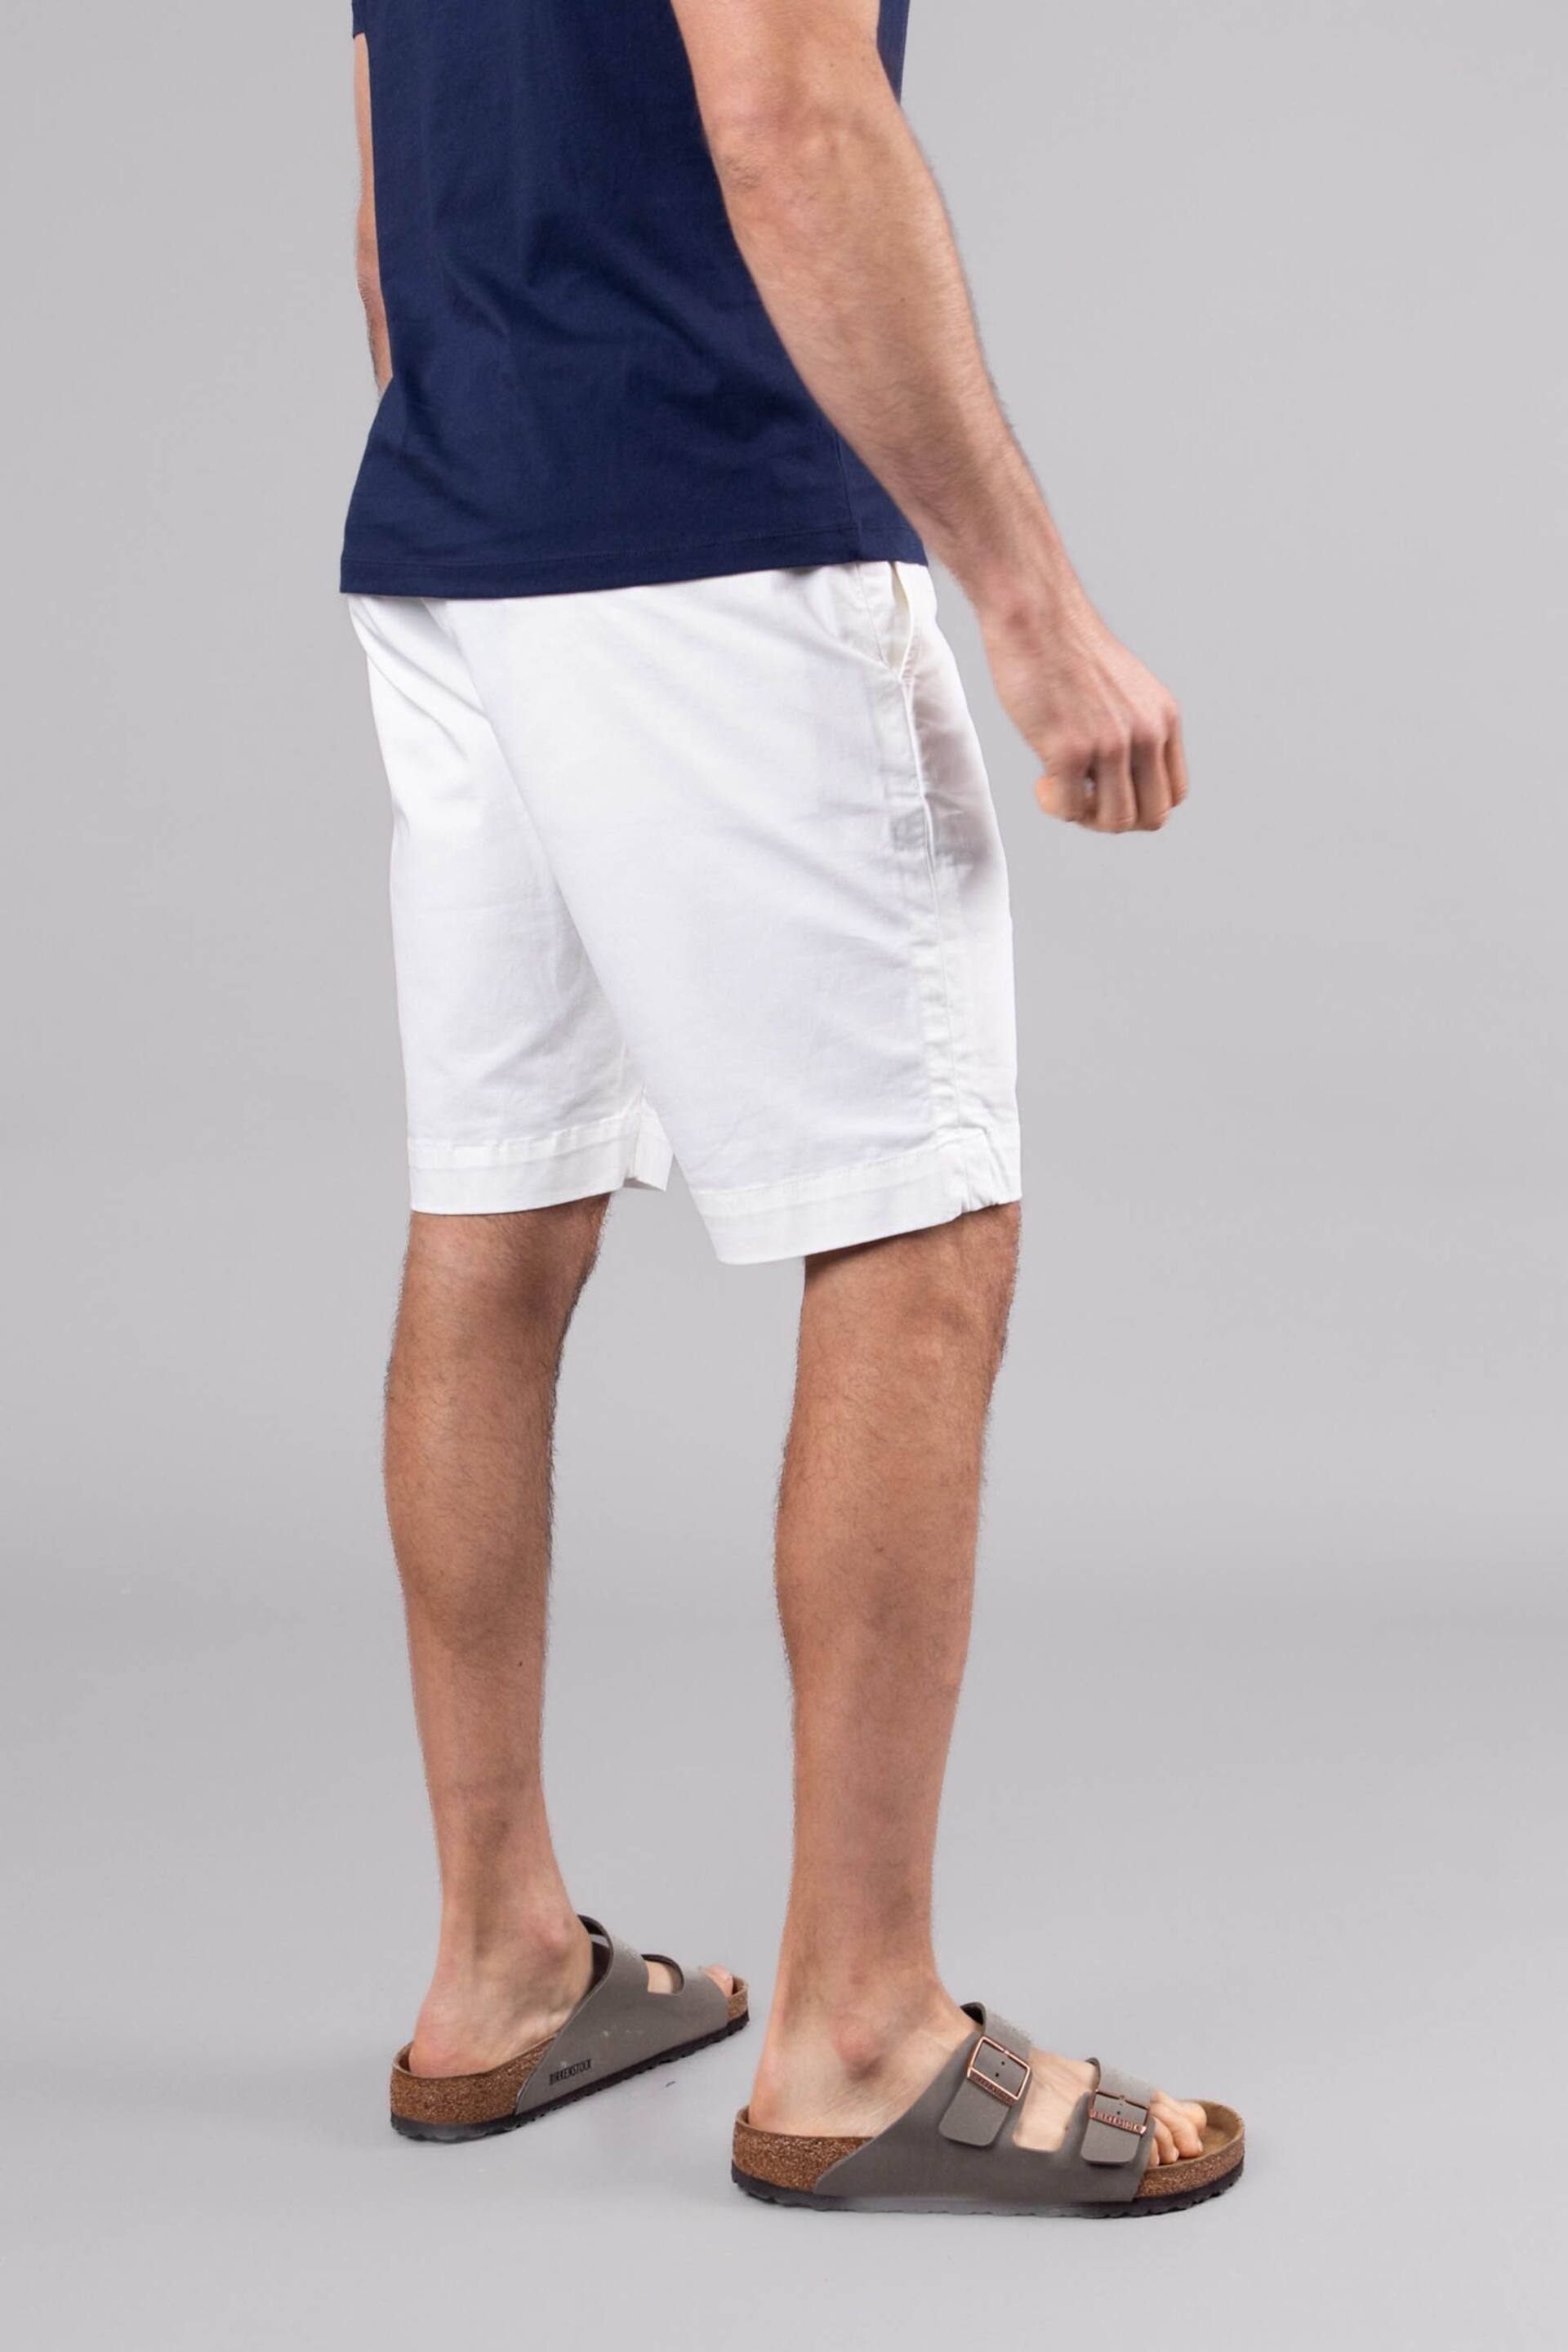 Lakeland Clothing Cream Fynn Cotton Shorts - Image 3 of 4